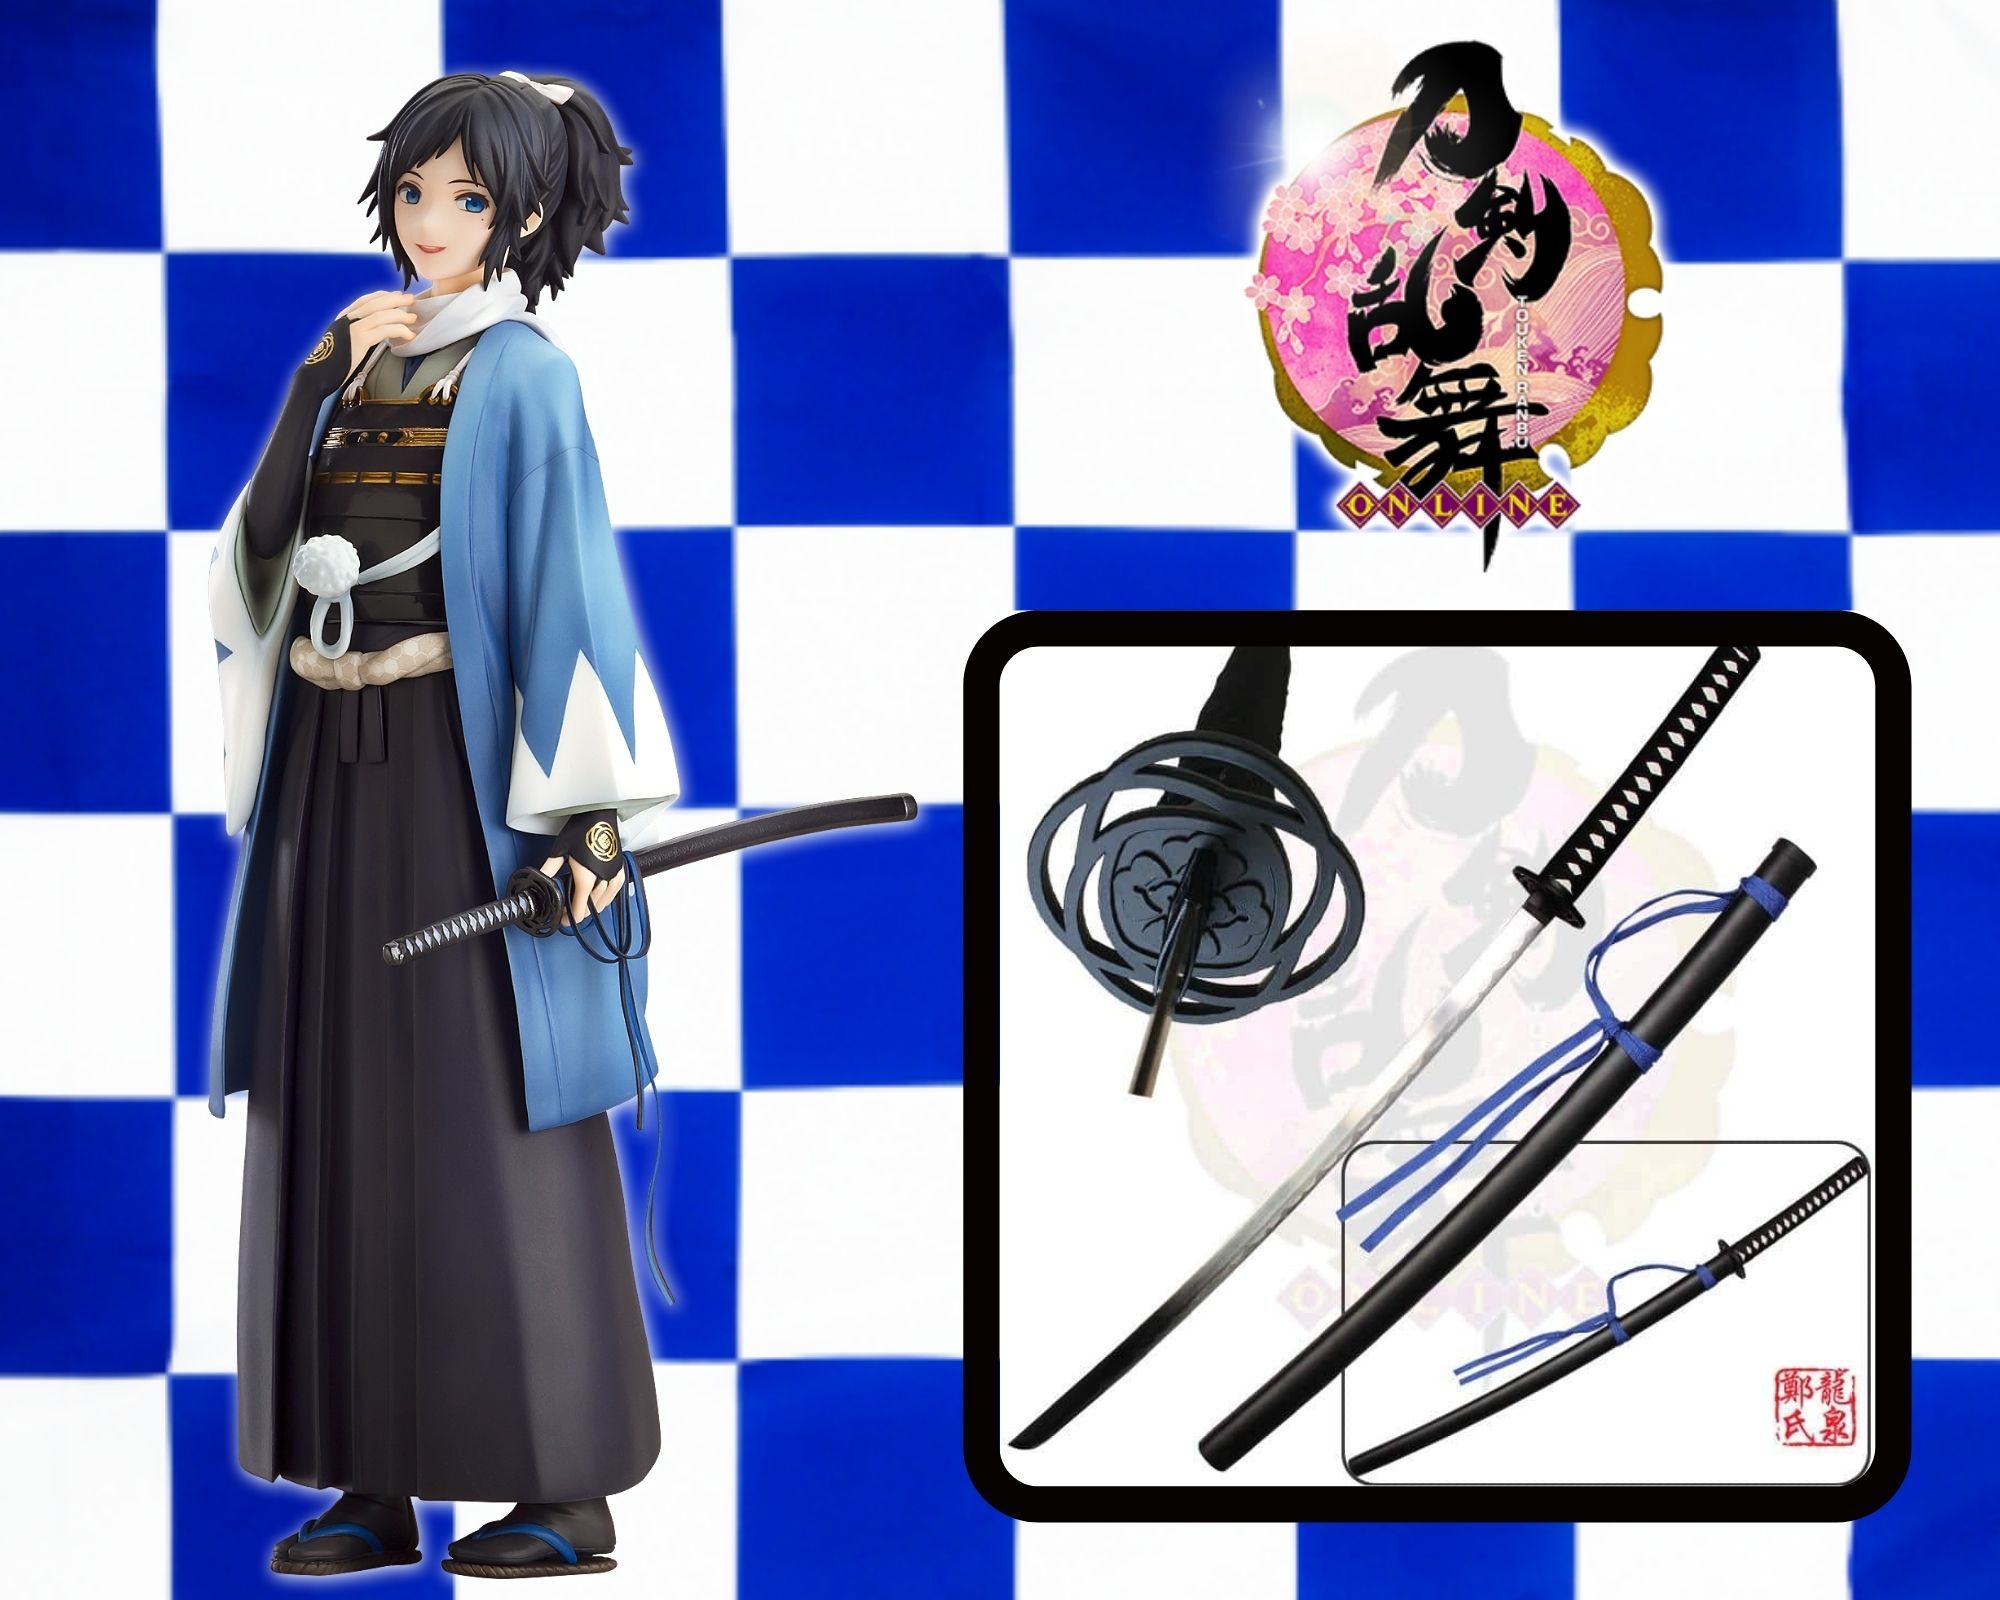 Noragami Aragoto Yato Sword Cosplay Weapon Prop